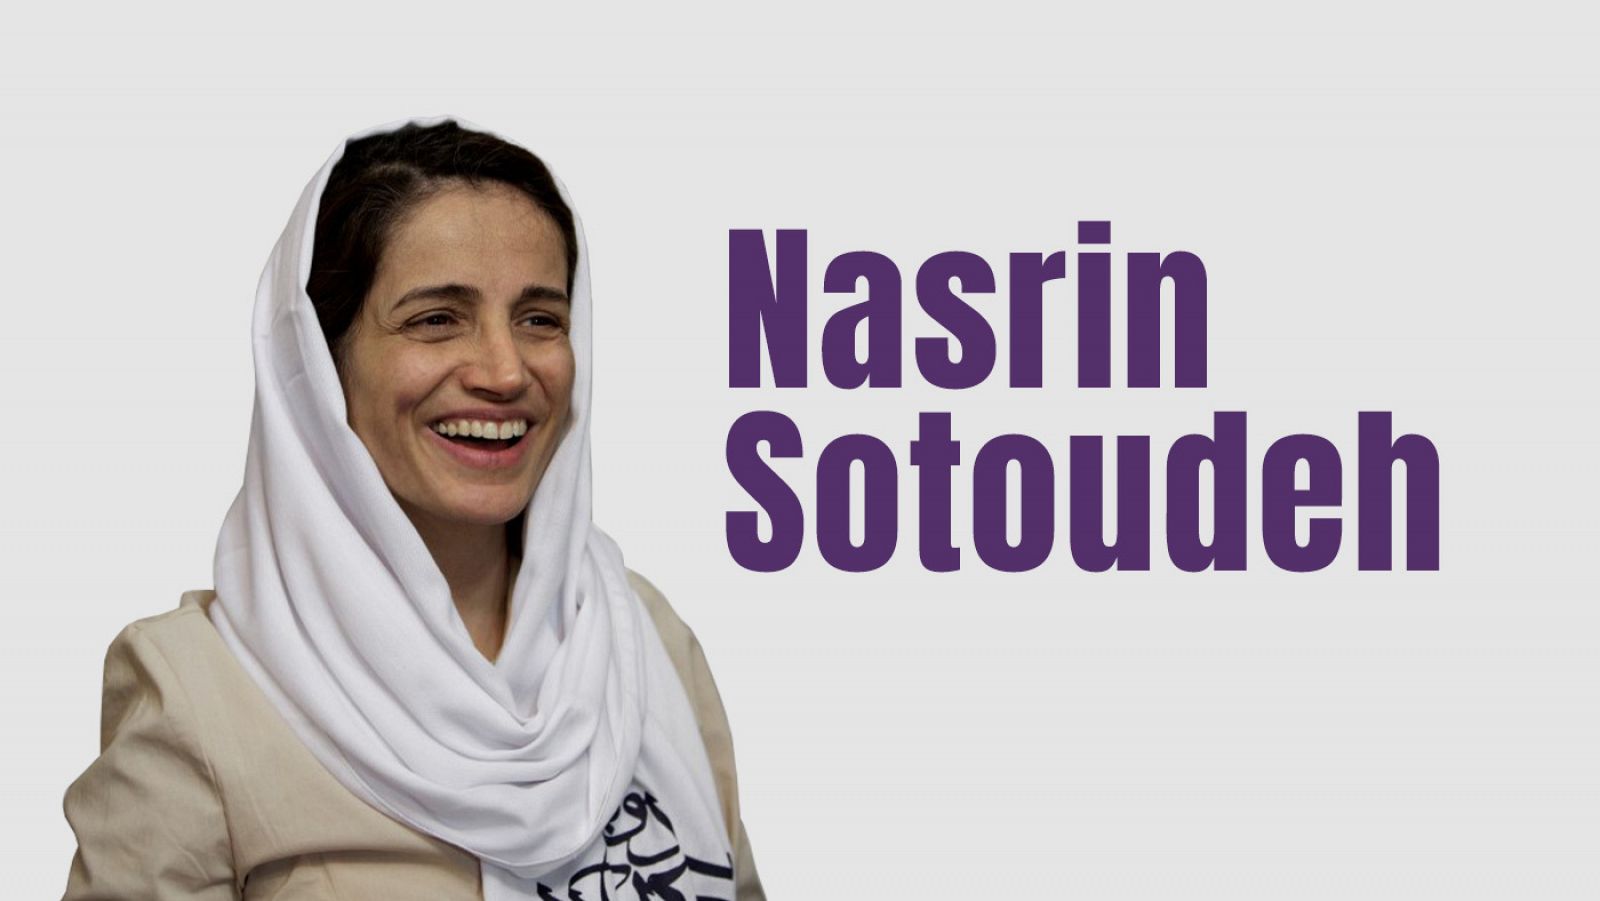 Nasrin Sutoudeh